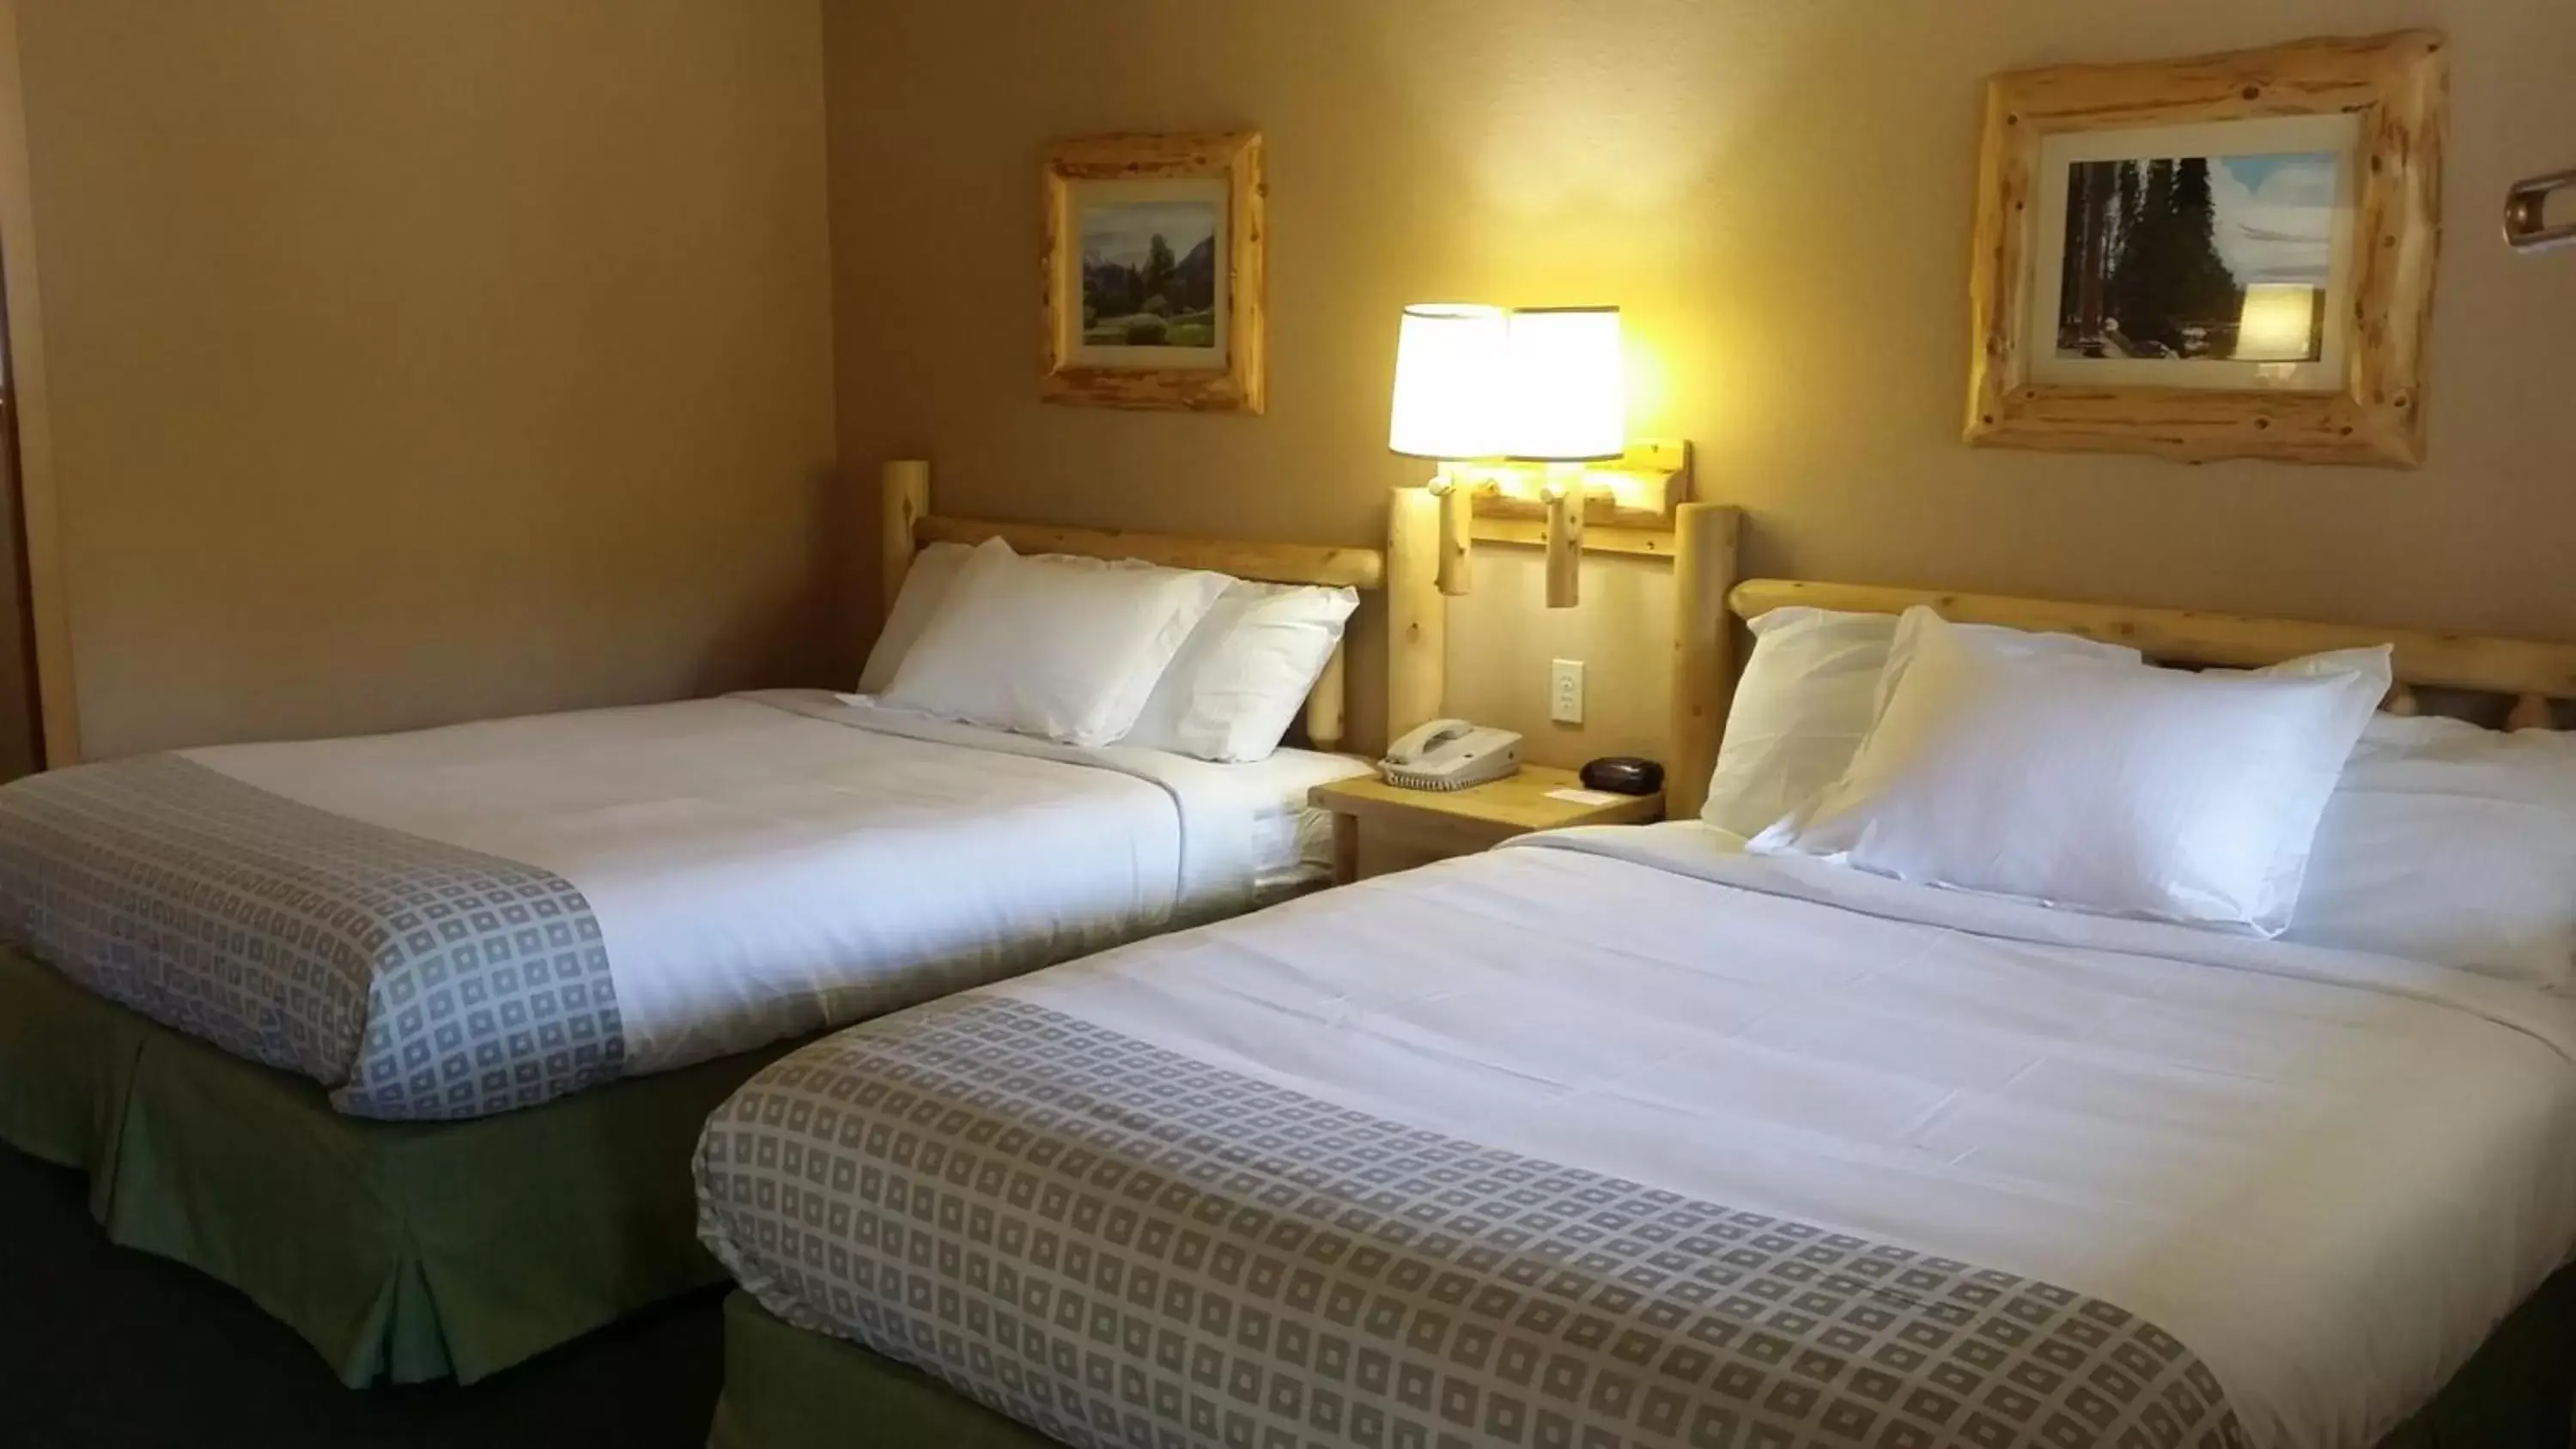 Deluxe Queen Room with Two Queen Beds in Wildwood Inn